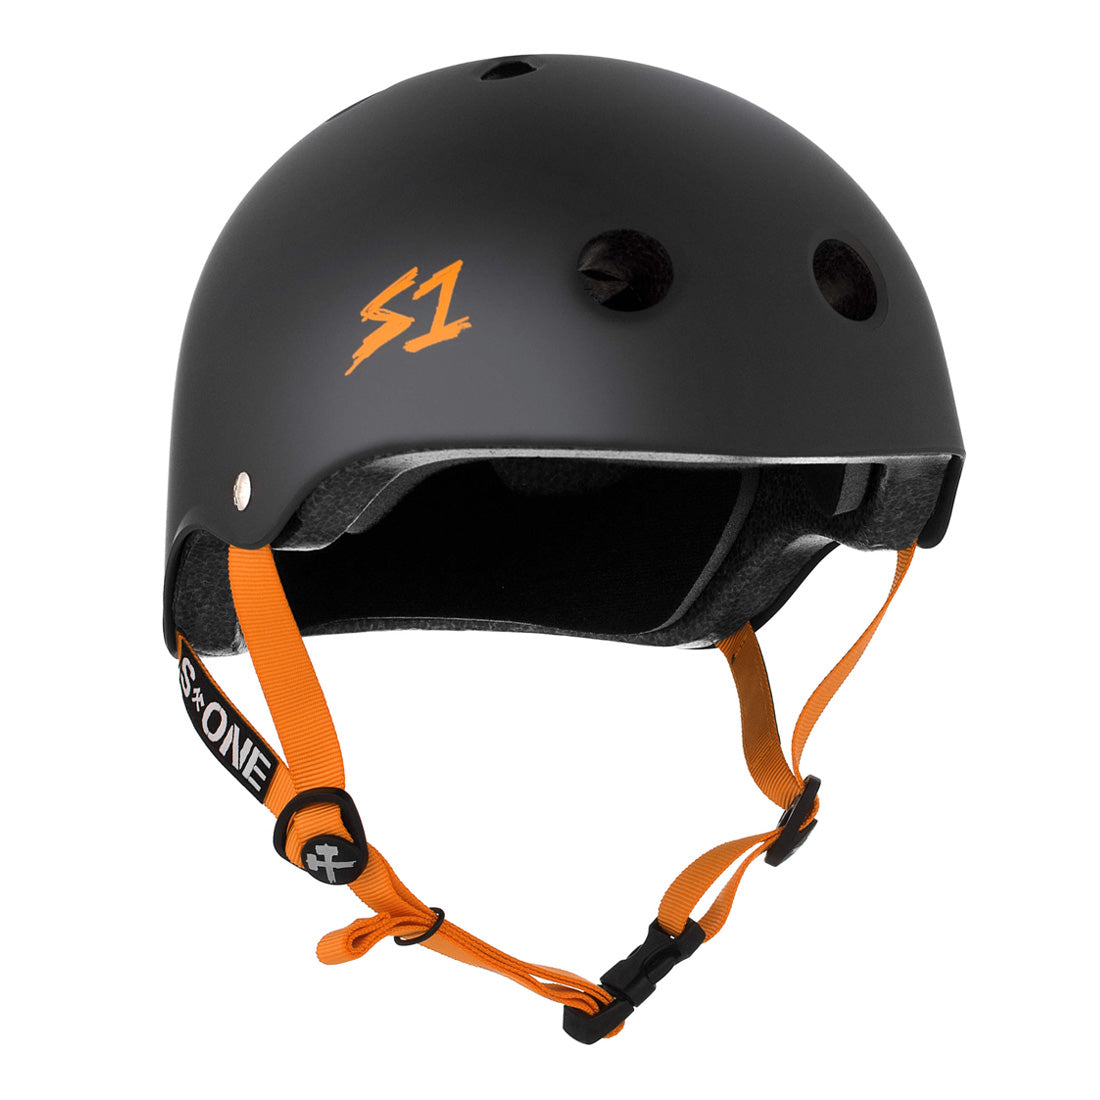 S-One Lifer Helmet - Black/Orange Matte Helmets